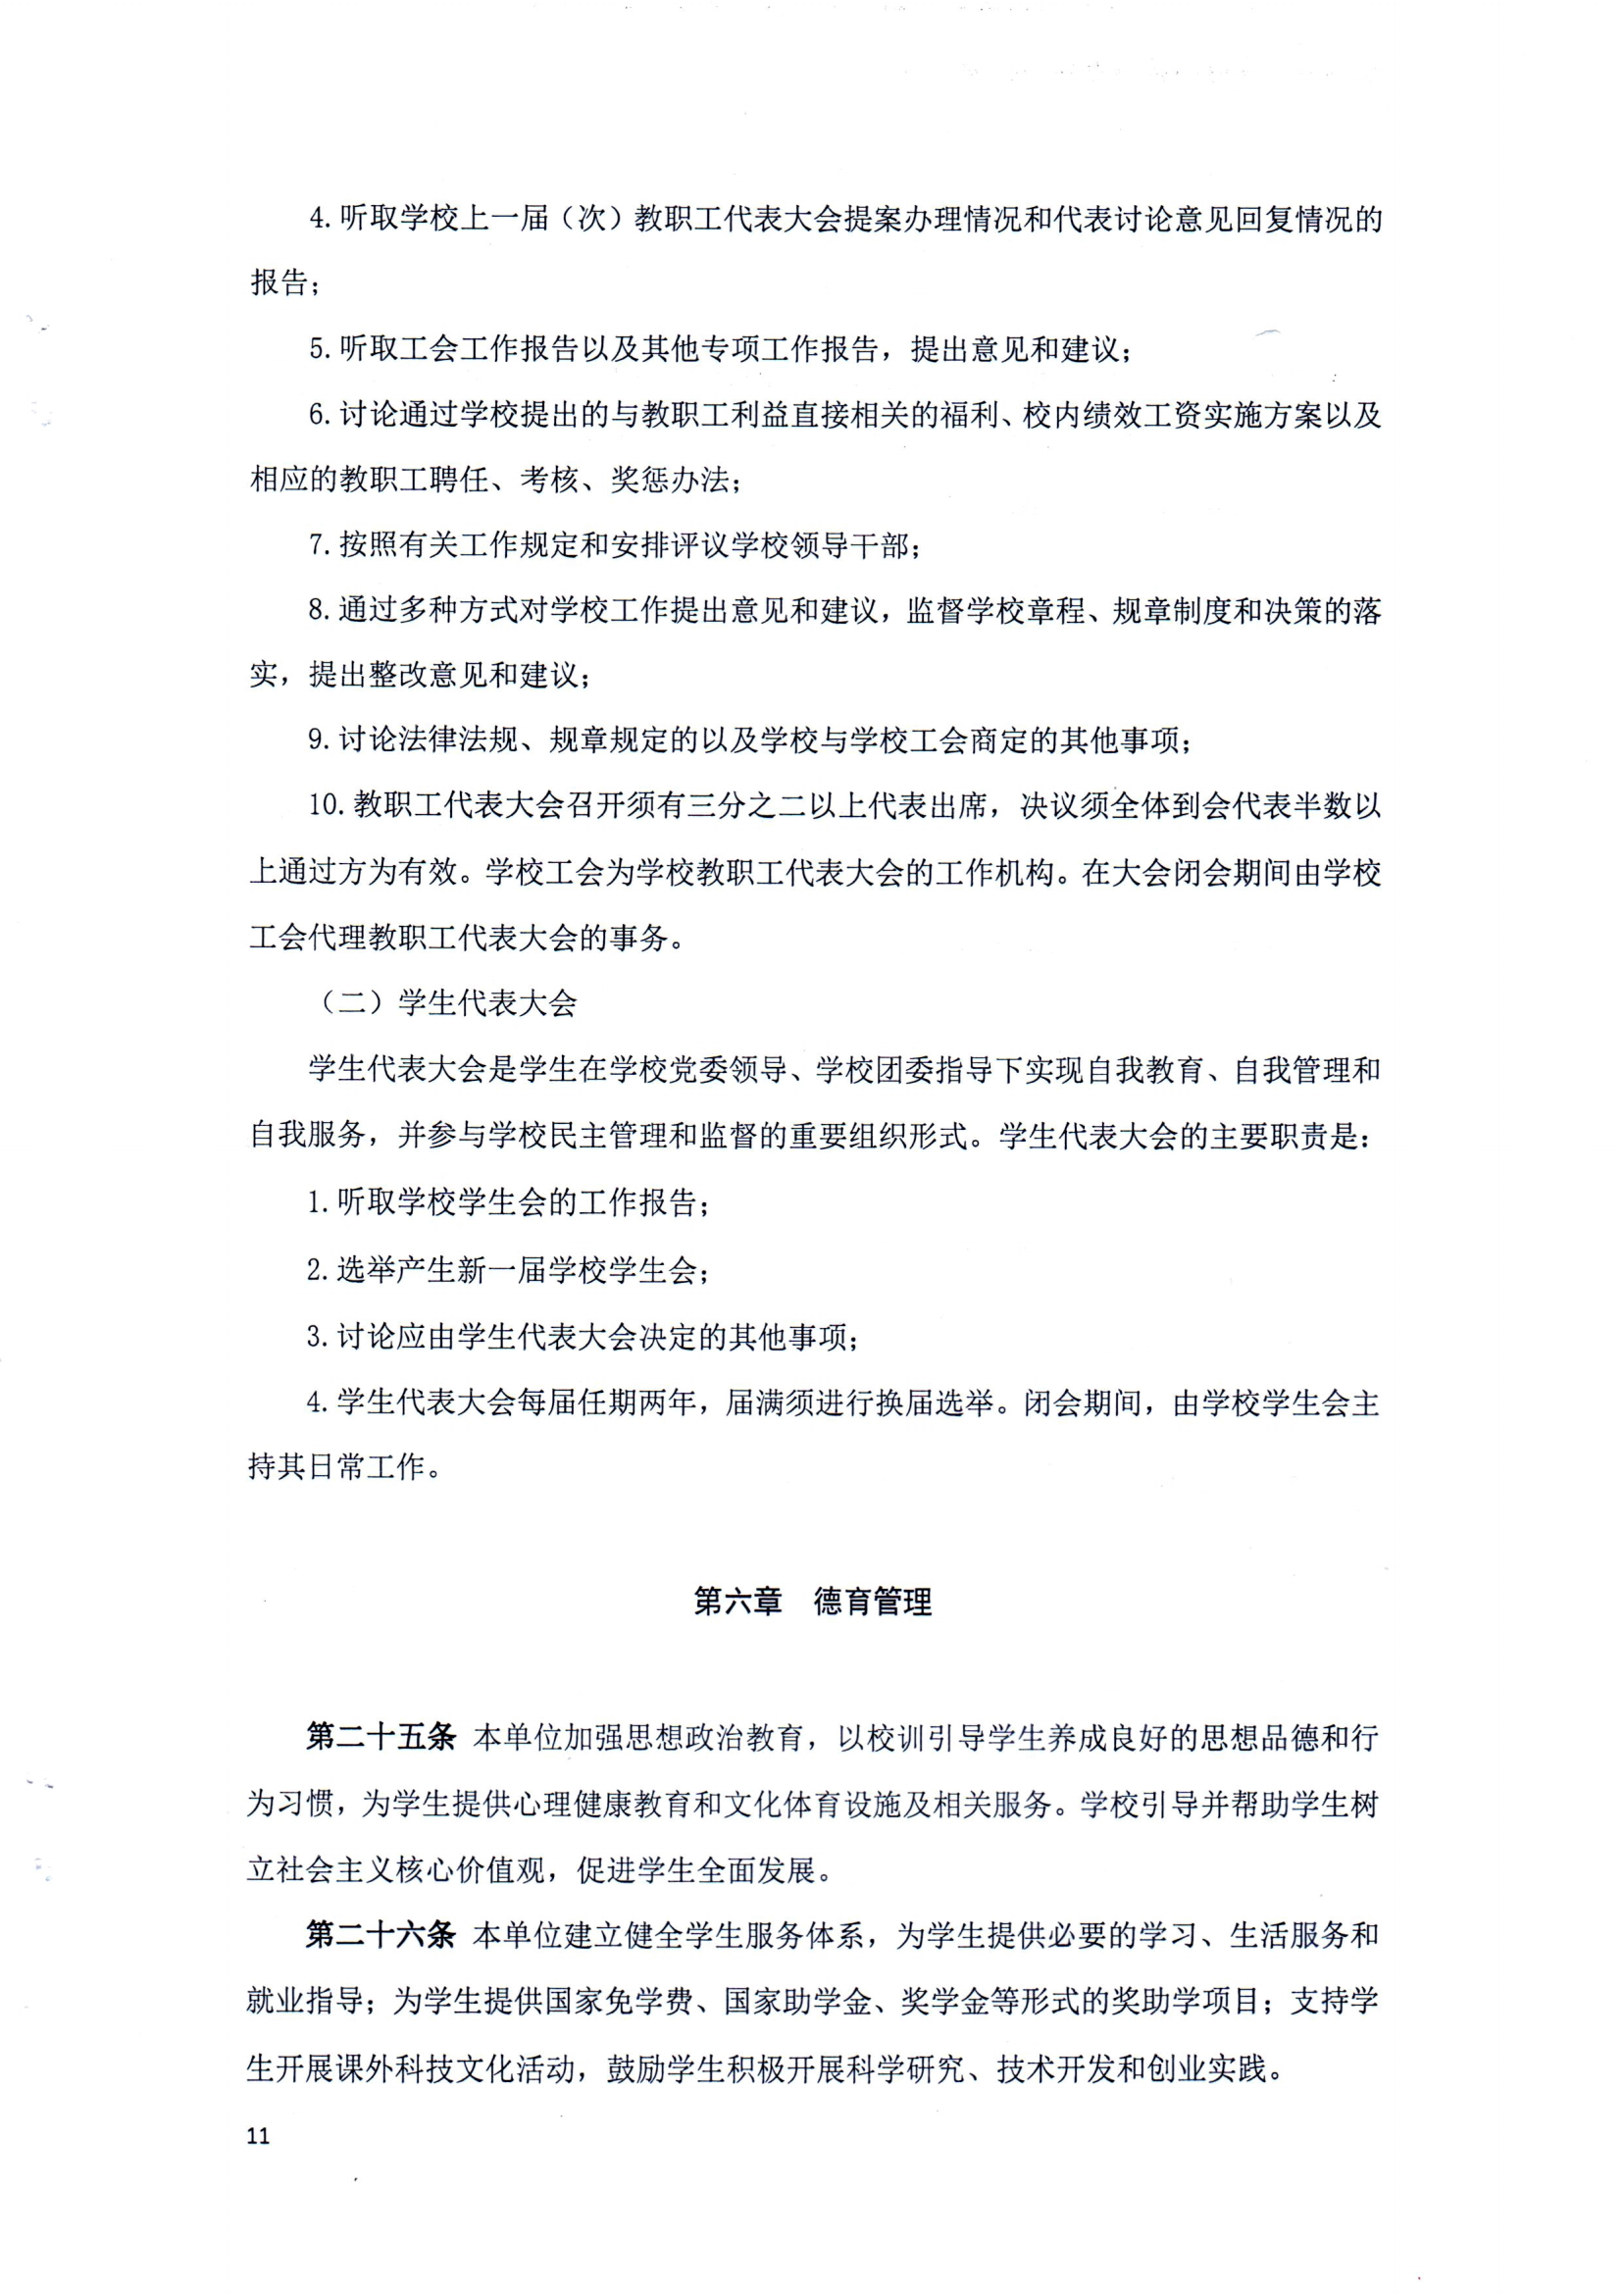 （中国）有限公司官网章程（修正案）_10.png